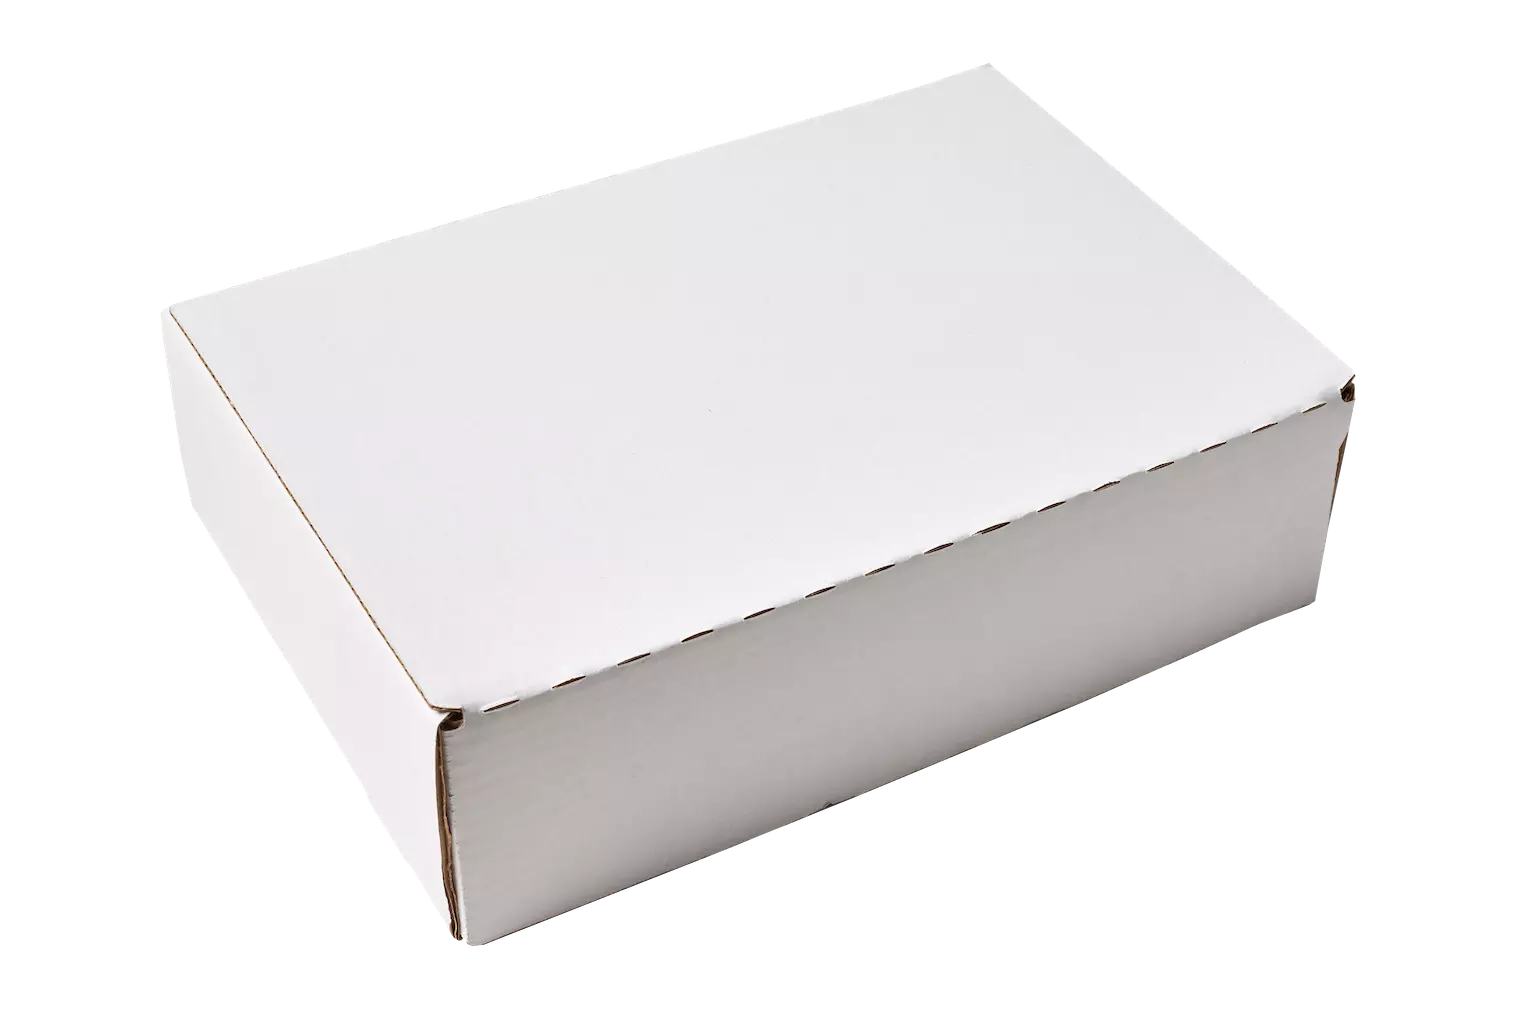 Hajtogatható doboz fehér 300x210x88mm